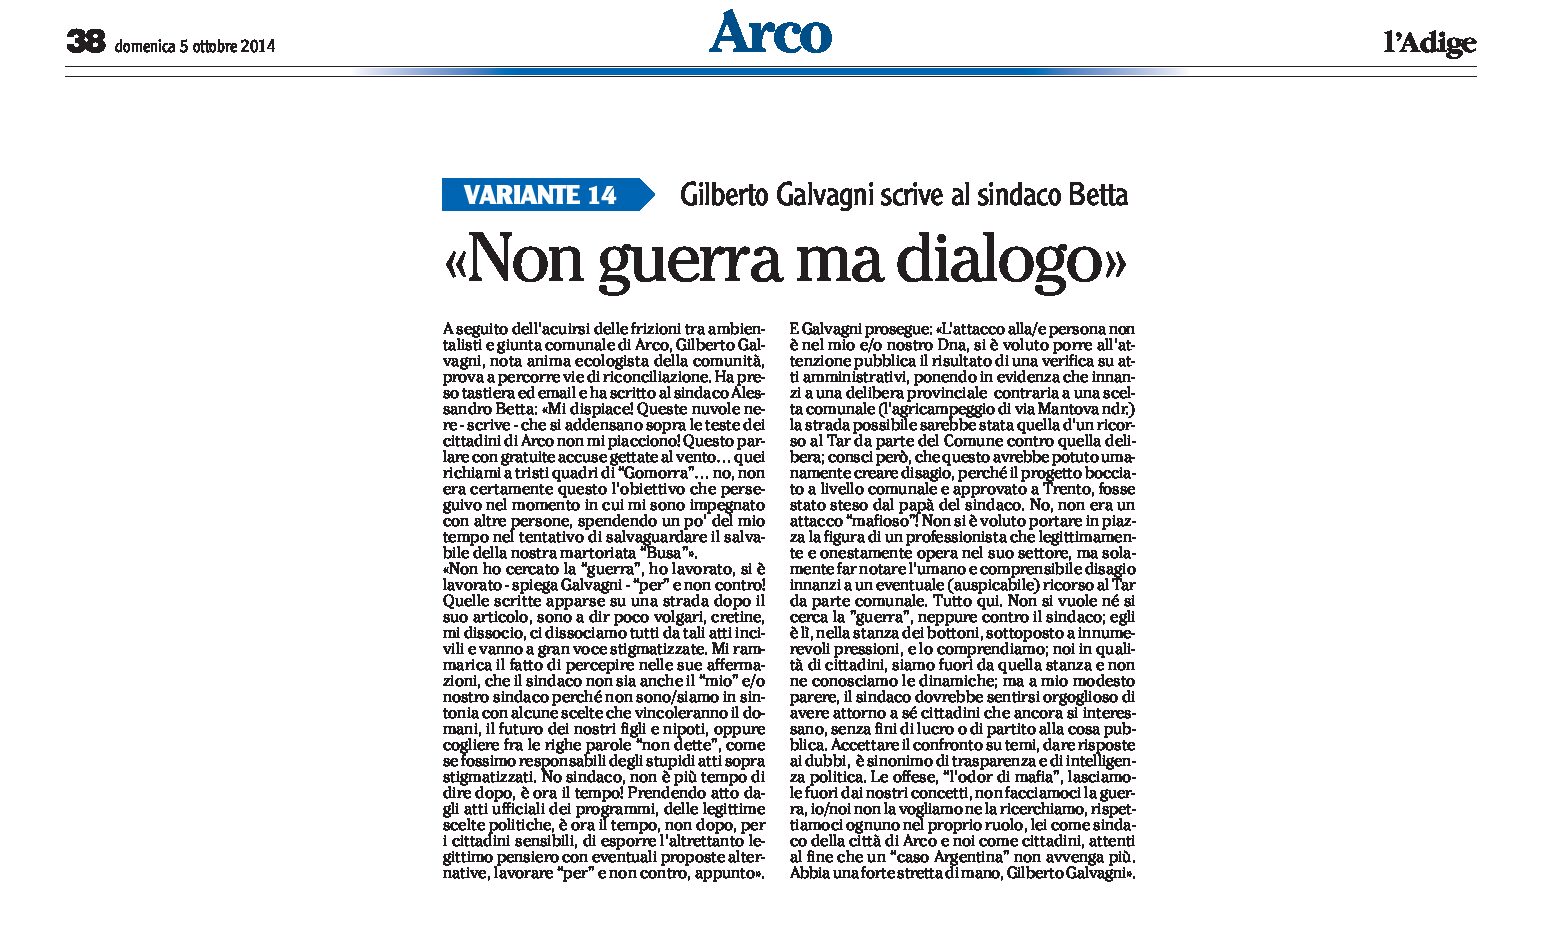 Arco: Galvagni scrive al sindaco Betta “non guerra ma dialogo”